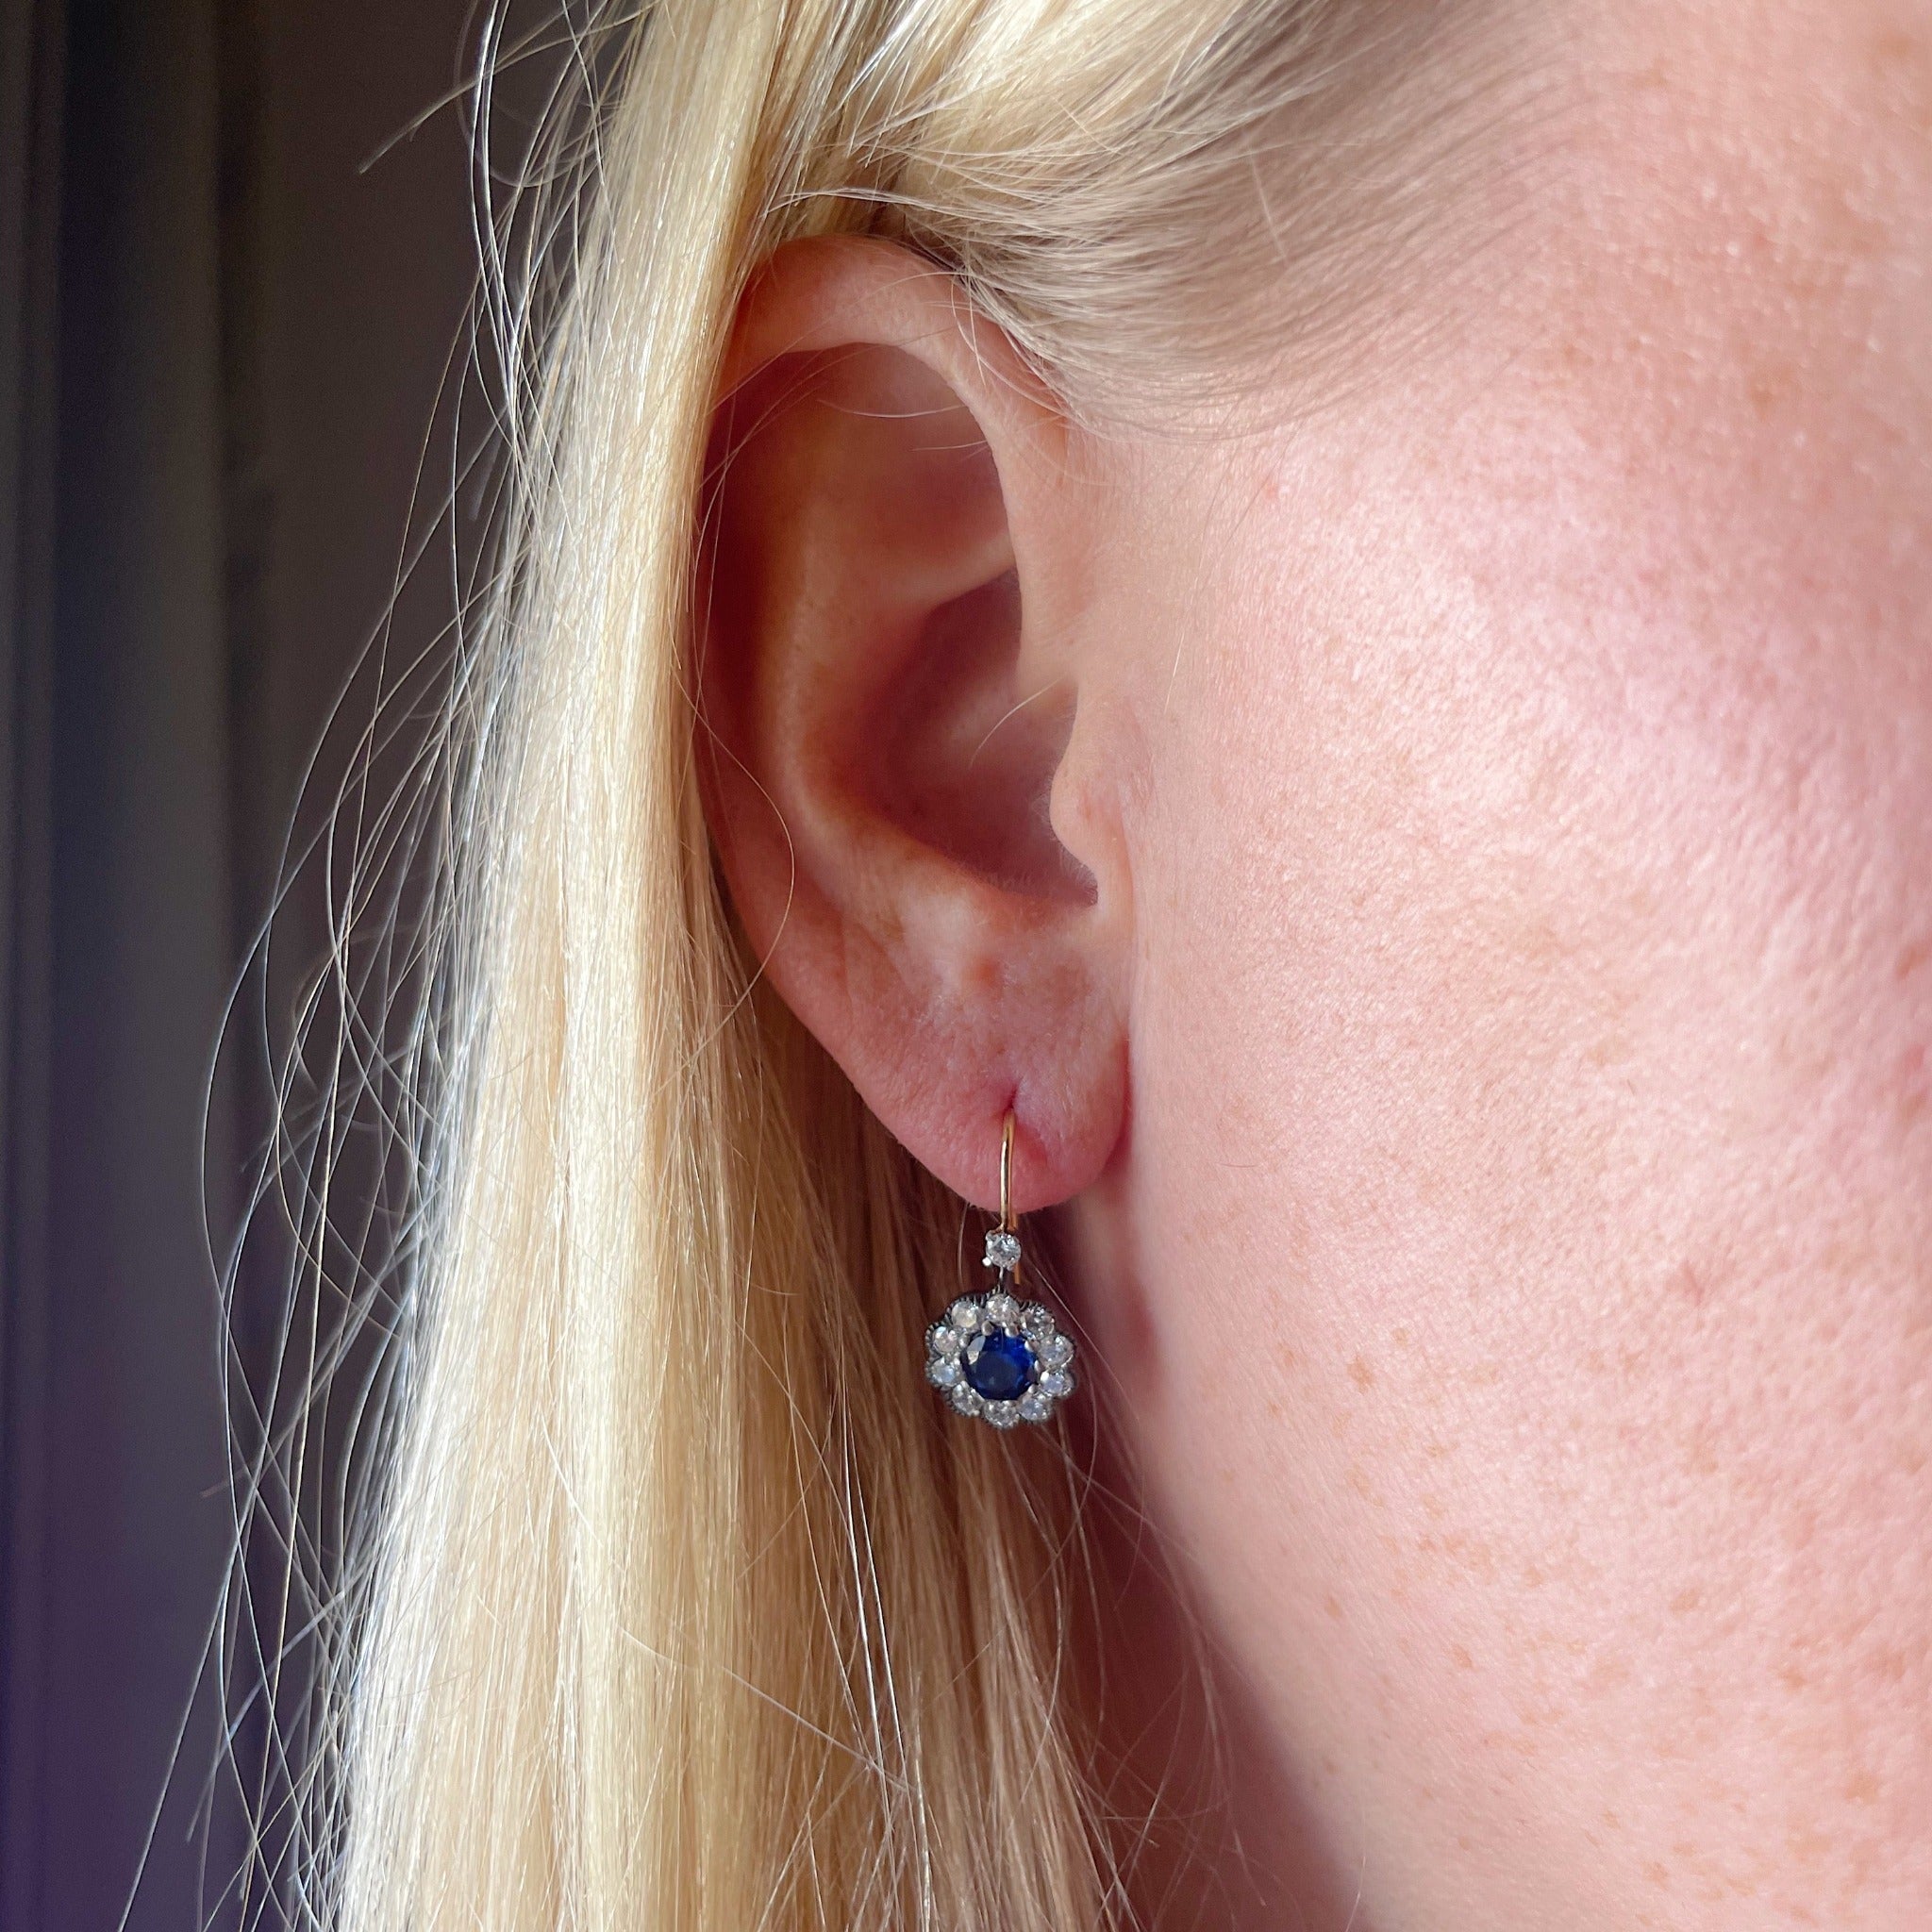 Sapphire & Diamond 14K Gold Cluster Drop Earrings